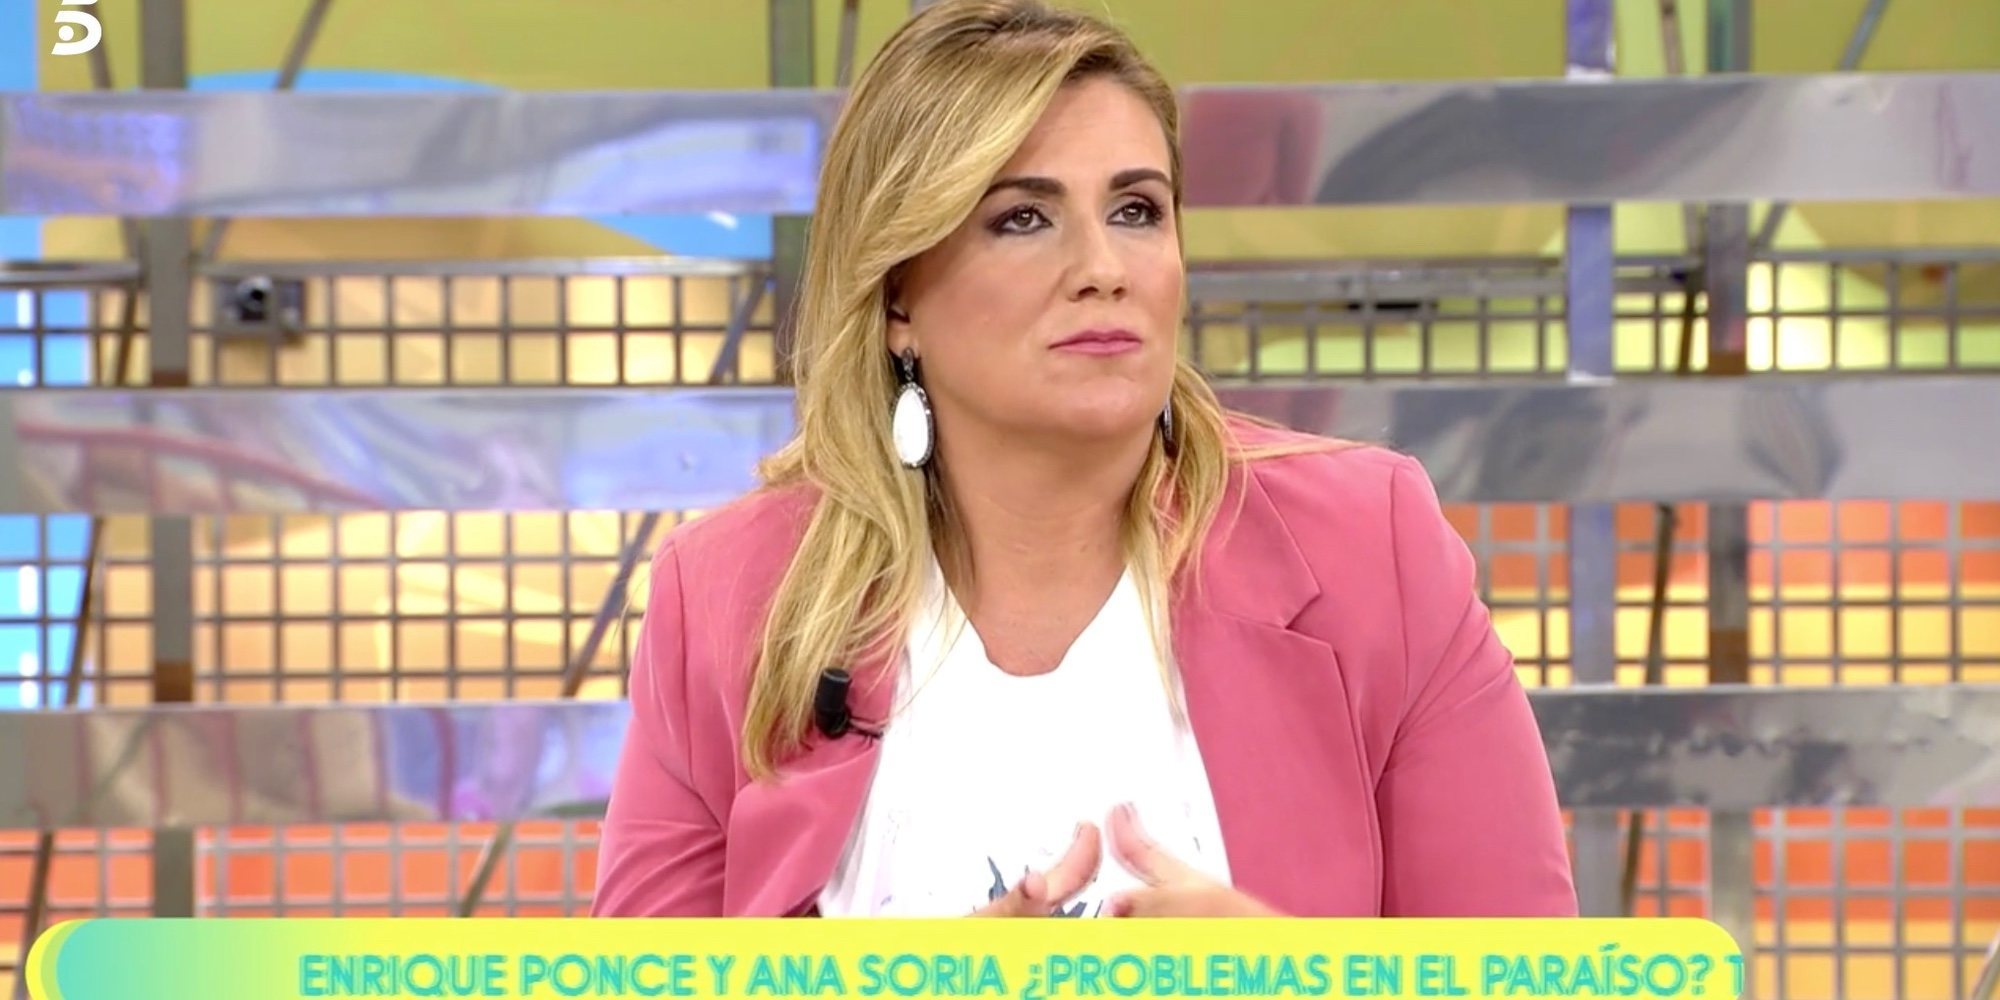 La mala experiencia de Carlota Corredera en una entrevista con Miguel Bosé: "Me trató como la última mierda"